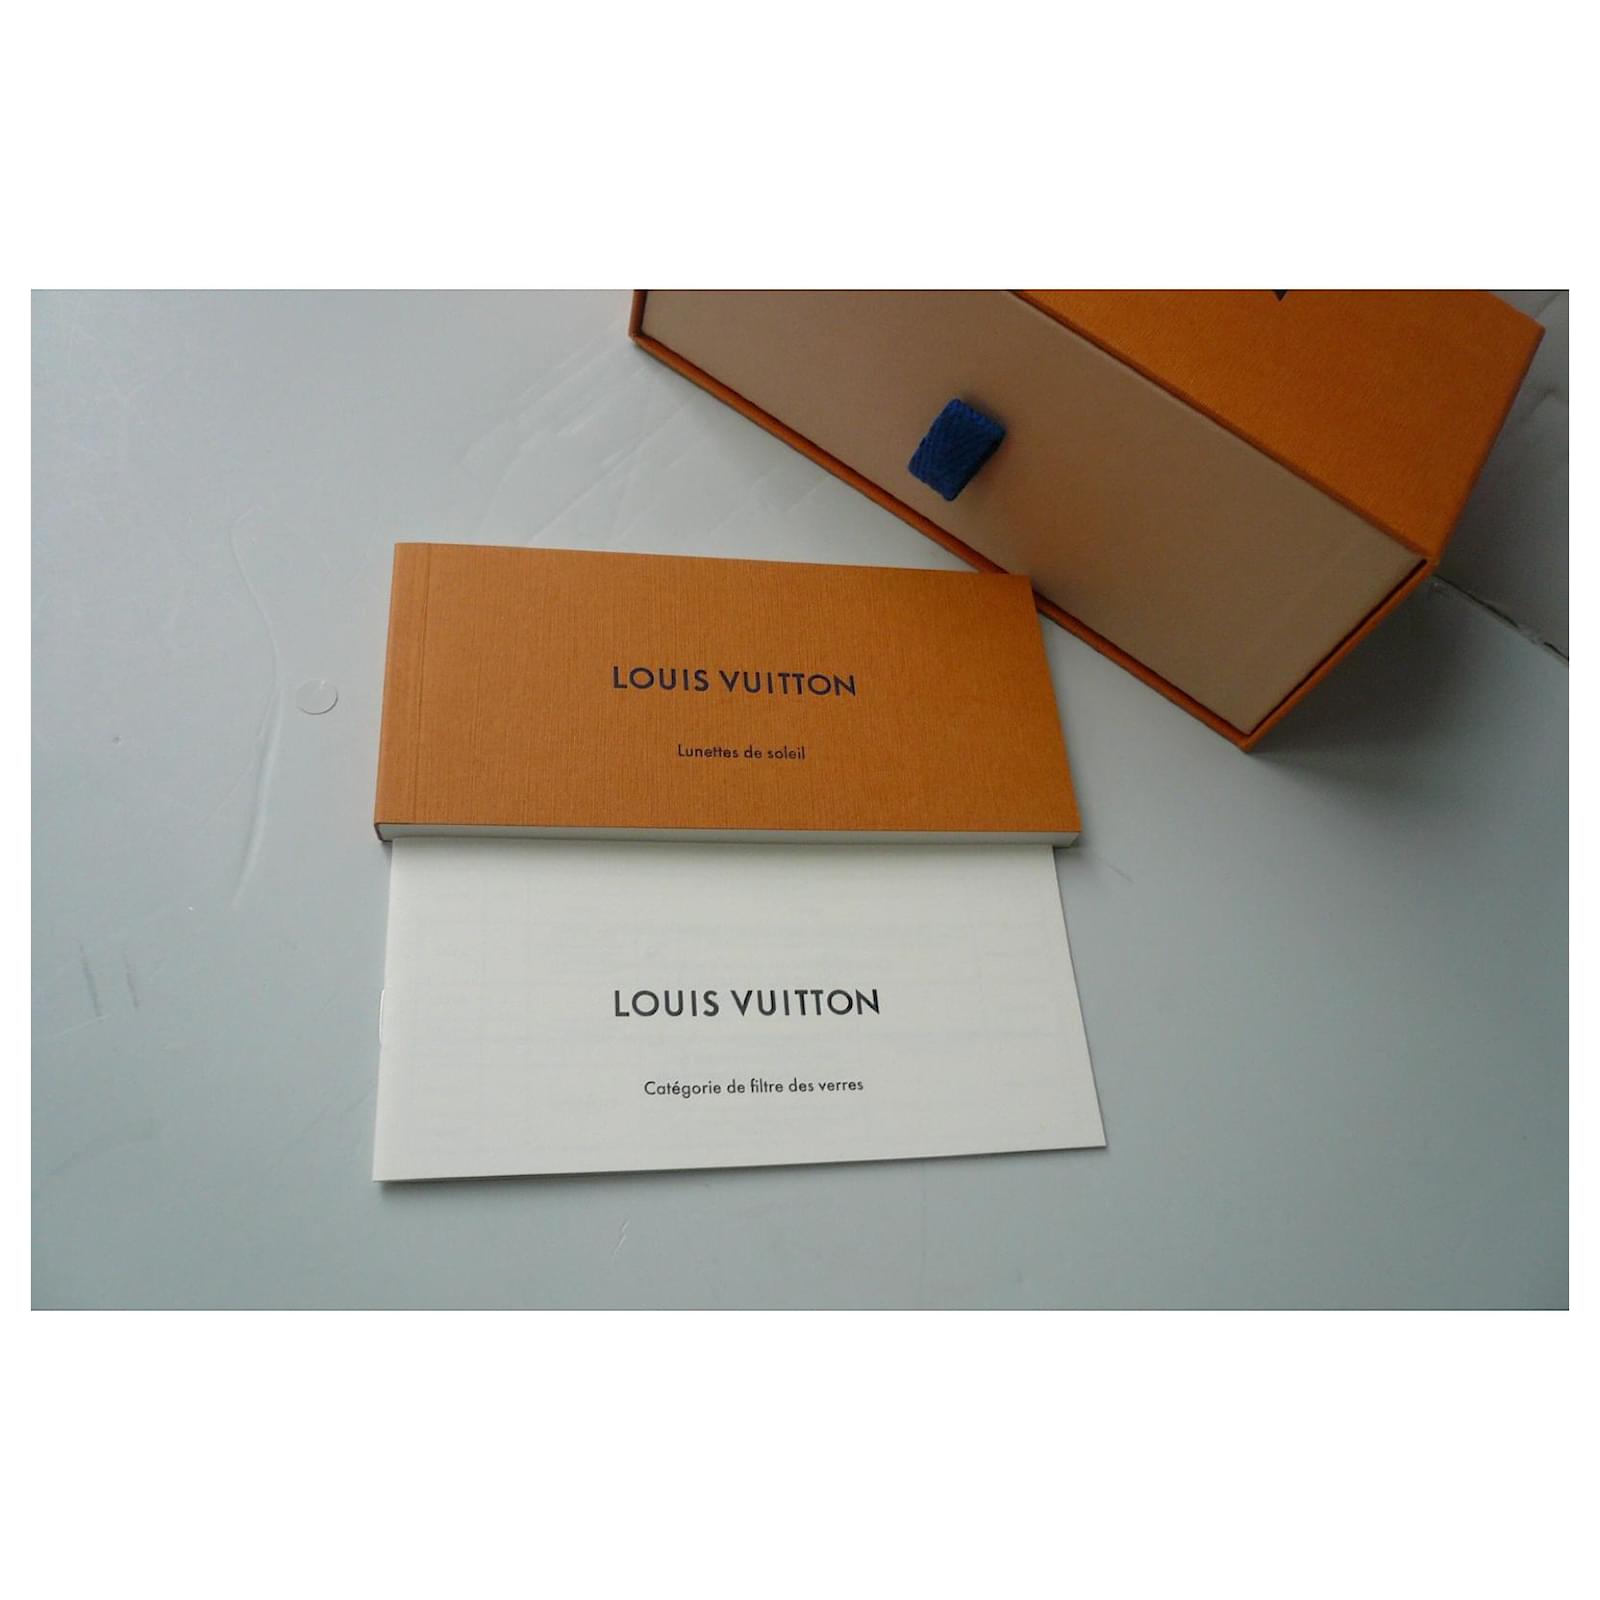 Louis Vuitton LV Blade Square Sunglasses Marron Clair Acetate. Size W